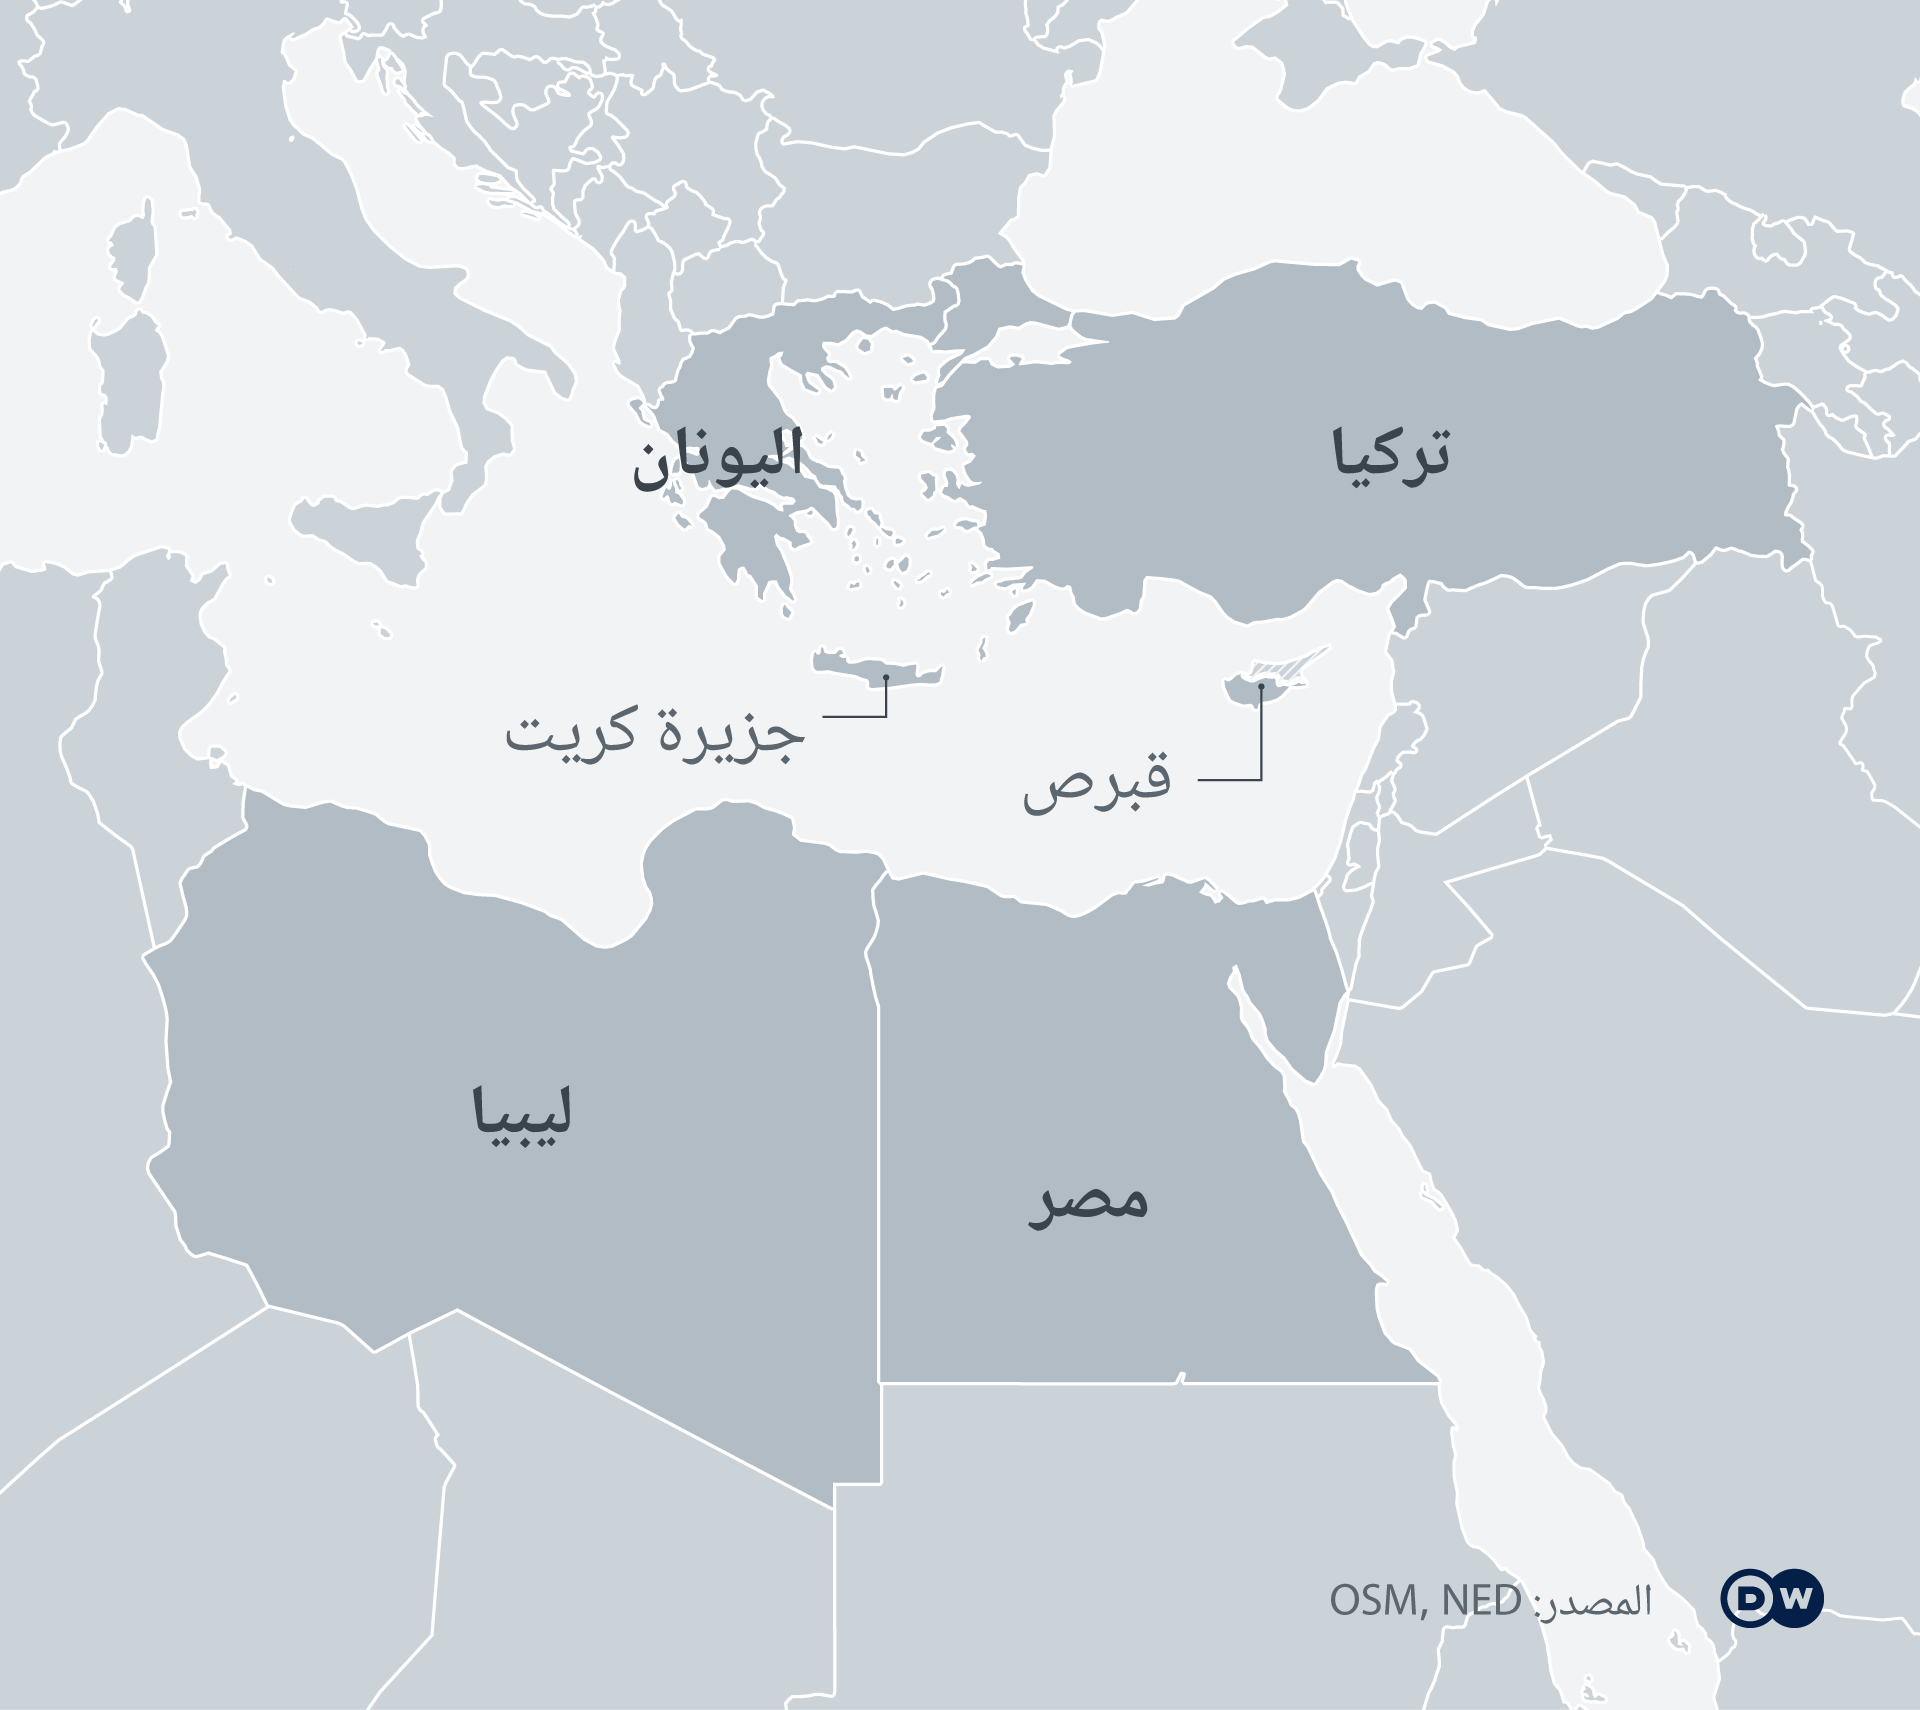 نتيجة بحث الصور عن خريطة تركيا وليبيا